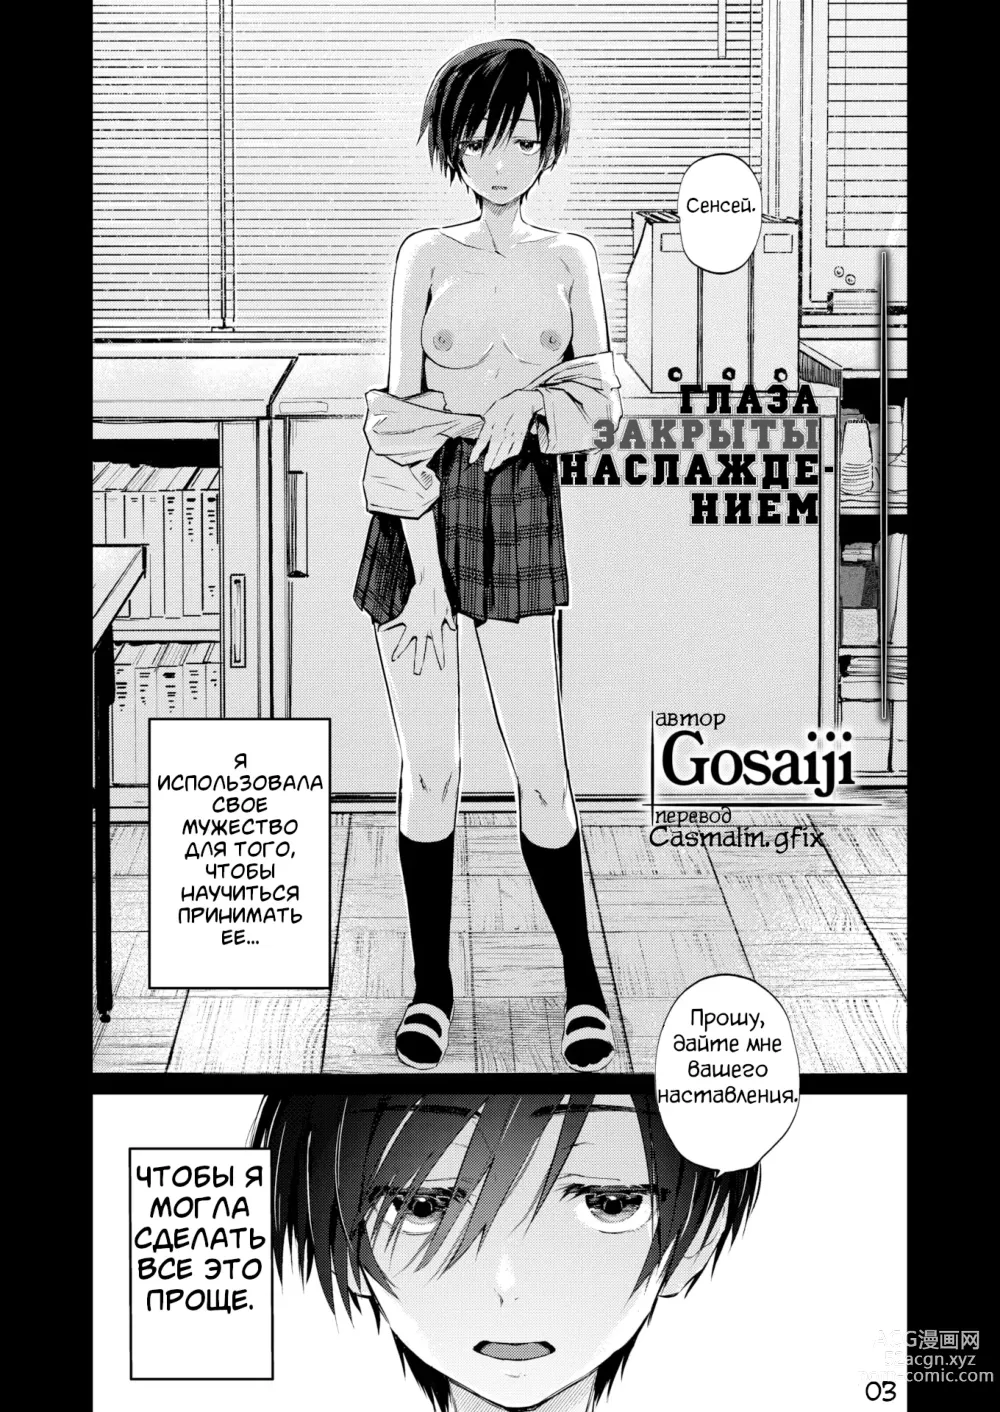 Page 3 of manga Глаза закрыты наслаждением